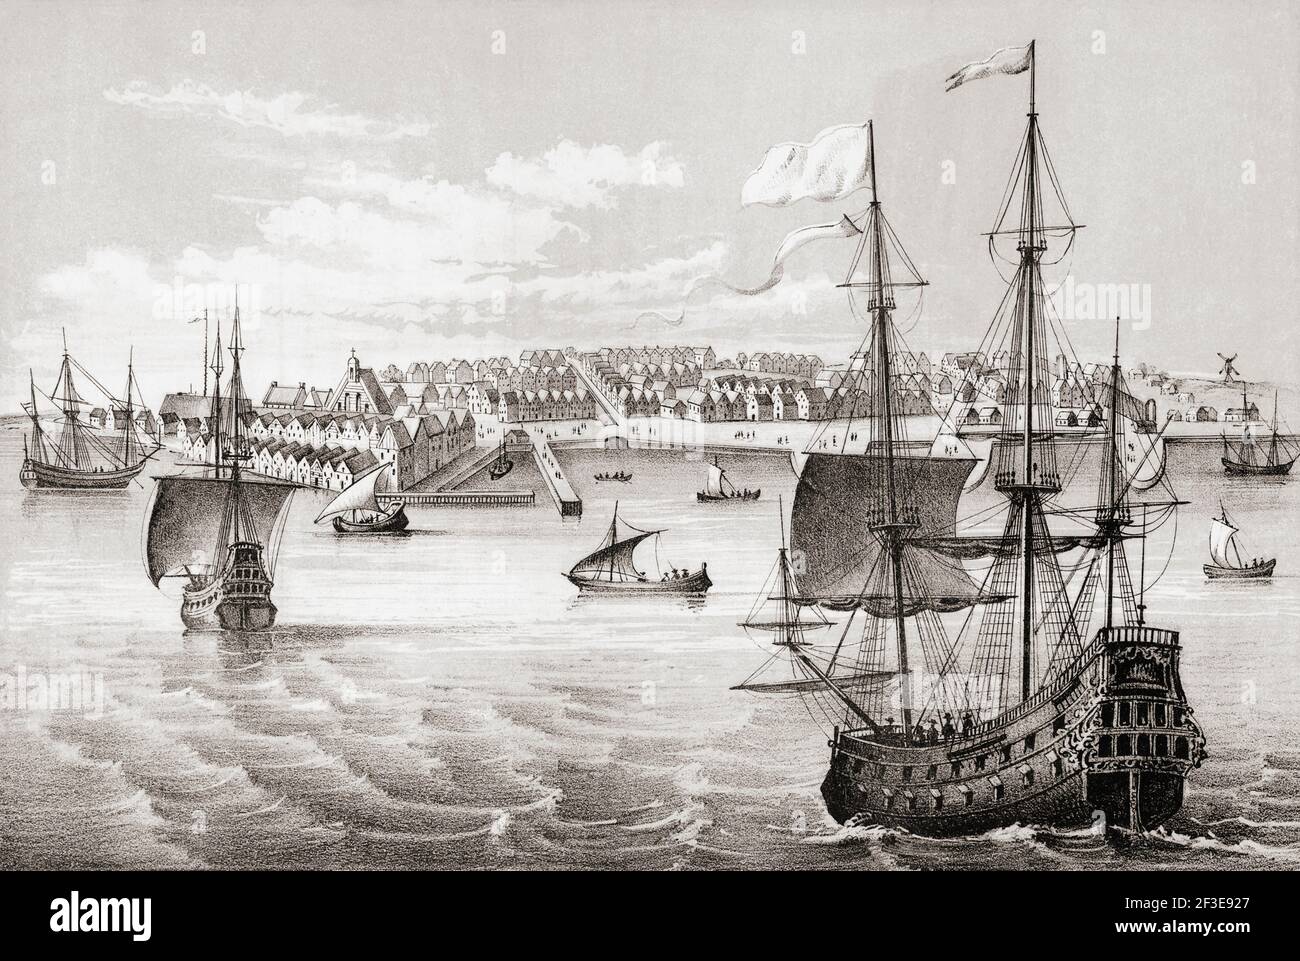 19th. Jahrhundert Kopie eines 17th. Jahrhunderts Gravur von New Amsterdam, als es von den Holländern kontrolliert wurde, und vor dem Vertrag von Breda von 1667, der den Zweiten Anglo-Niederländischen Krieg beendete und New Amsterdam an die Briten verlieh, die es New York umbenannten. Stockfoto